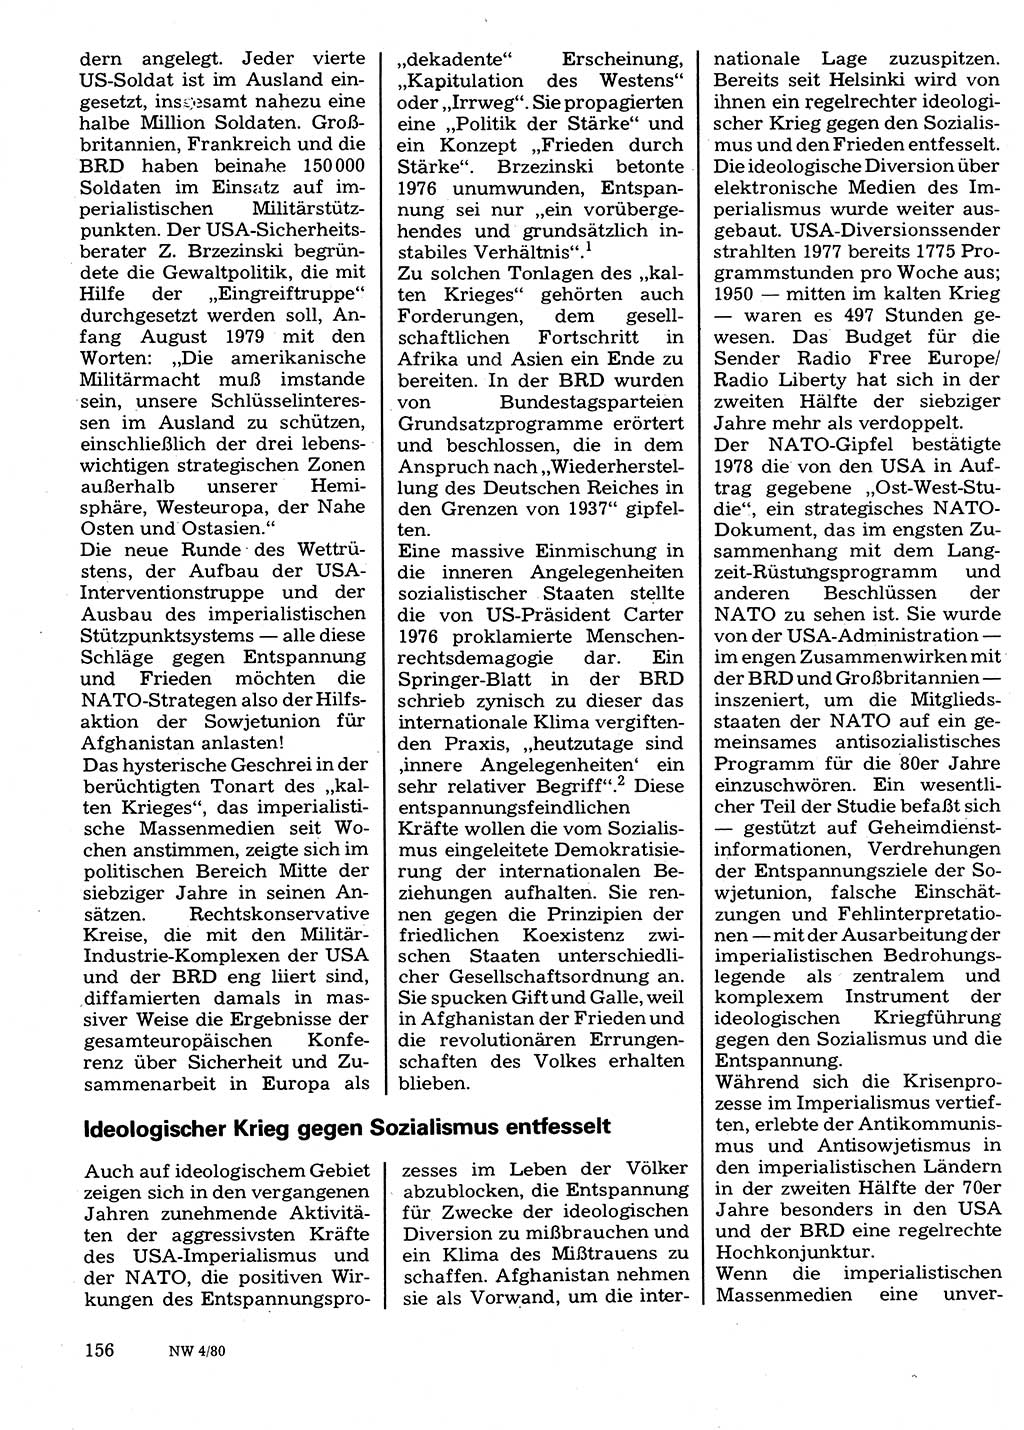 Neuer Weg (NW), Organ des Zentralkomitees (ZK) der SED (Sozialistische Einheitspartei Deutschlands) für Fragen des Parteilebens, 35. Jahrgang [Deutsche Demokratische Republik (DDR)] 1980, Seite 156 (NW ZK SED DDR 1980, S. 156)